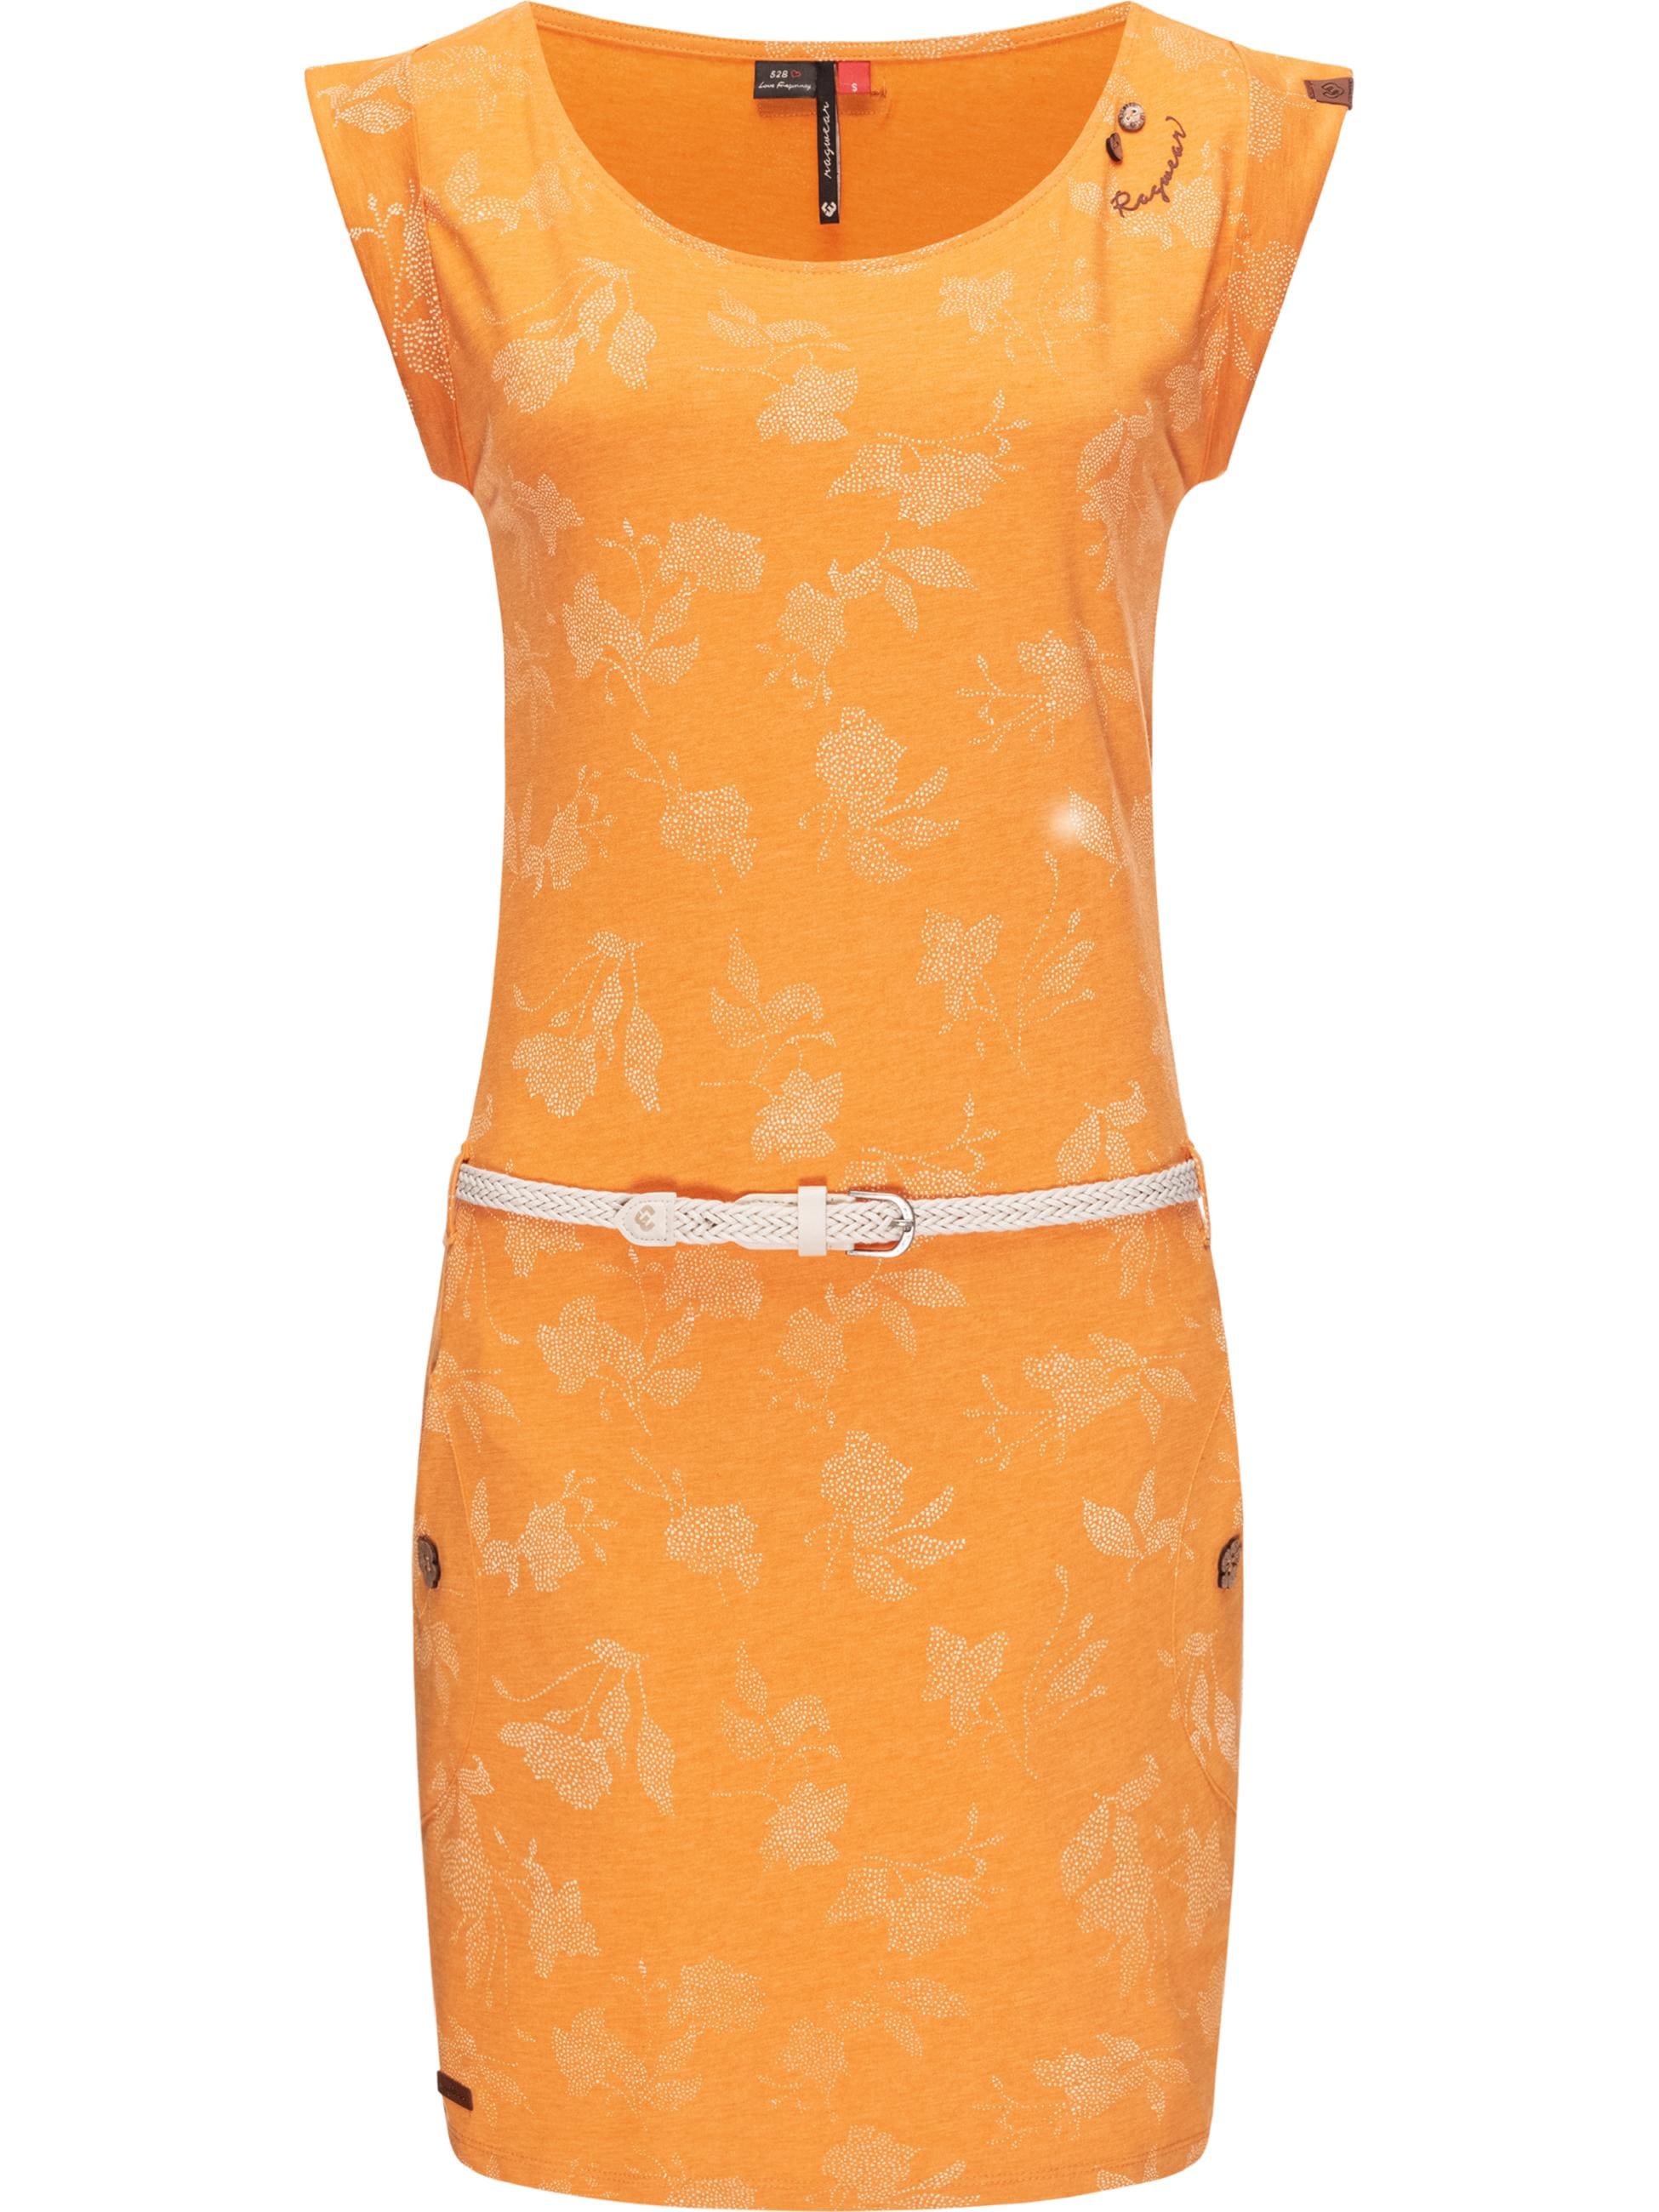 Gelbes Kleid bei OTTO | Gelbe Kleider online shoppen